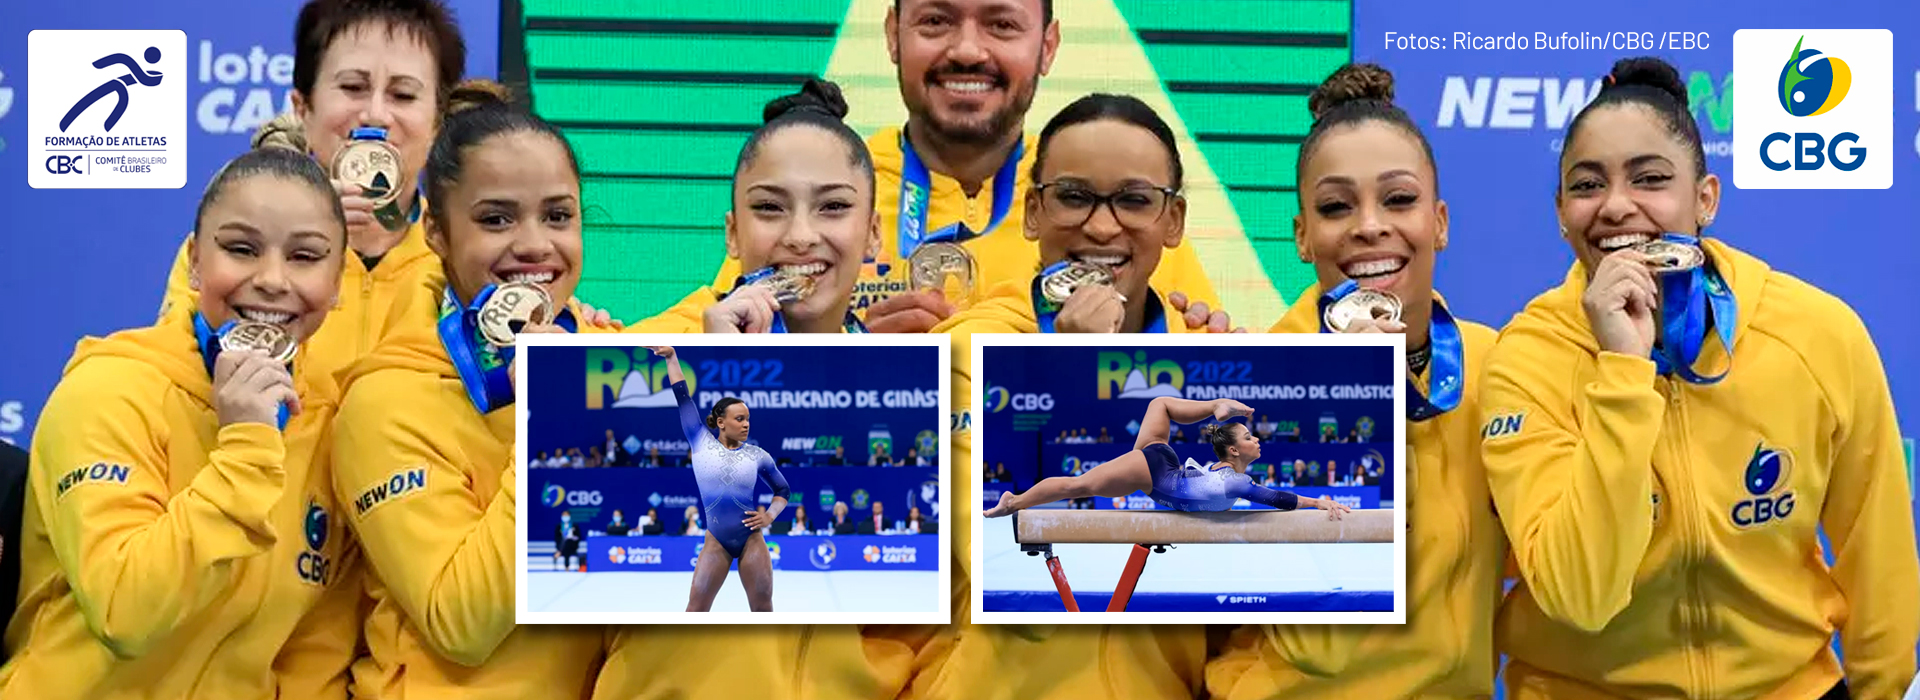 Com equipe cheia de atletas clubistas, Brasil conquista ouro no Pan Americano de Ginástica